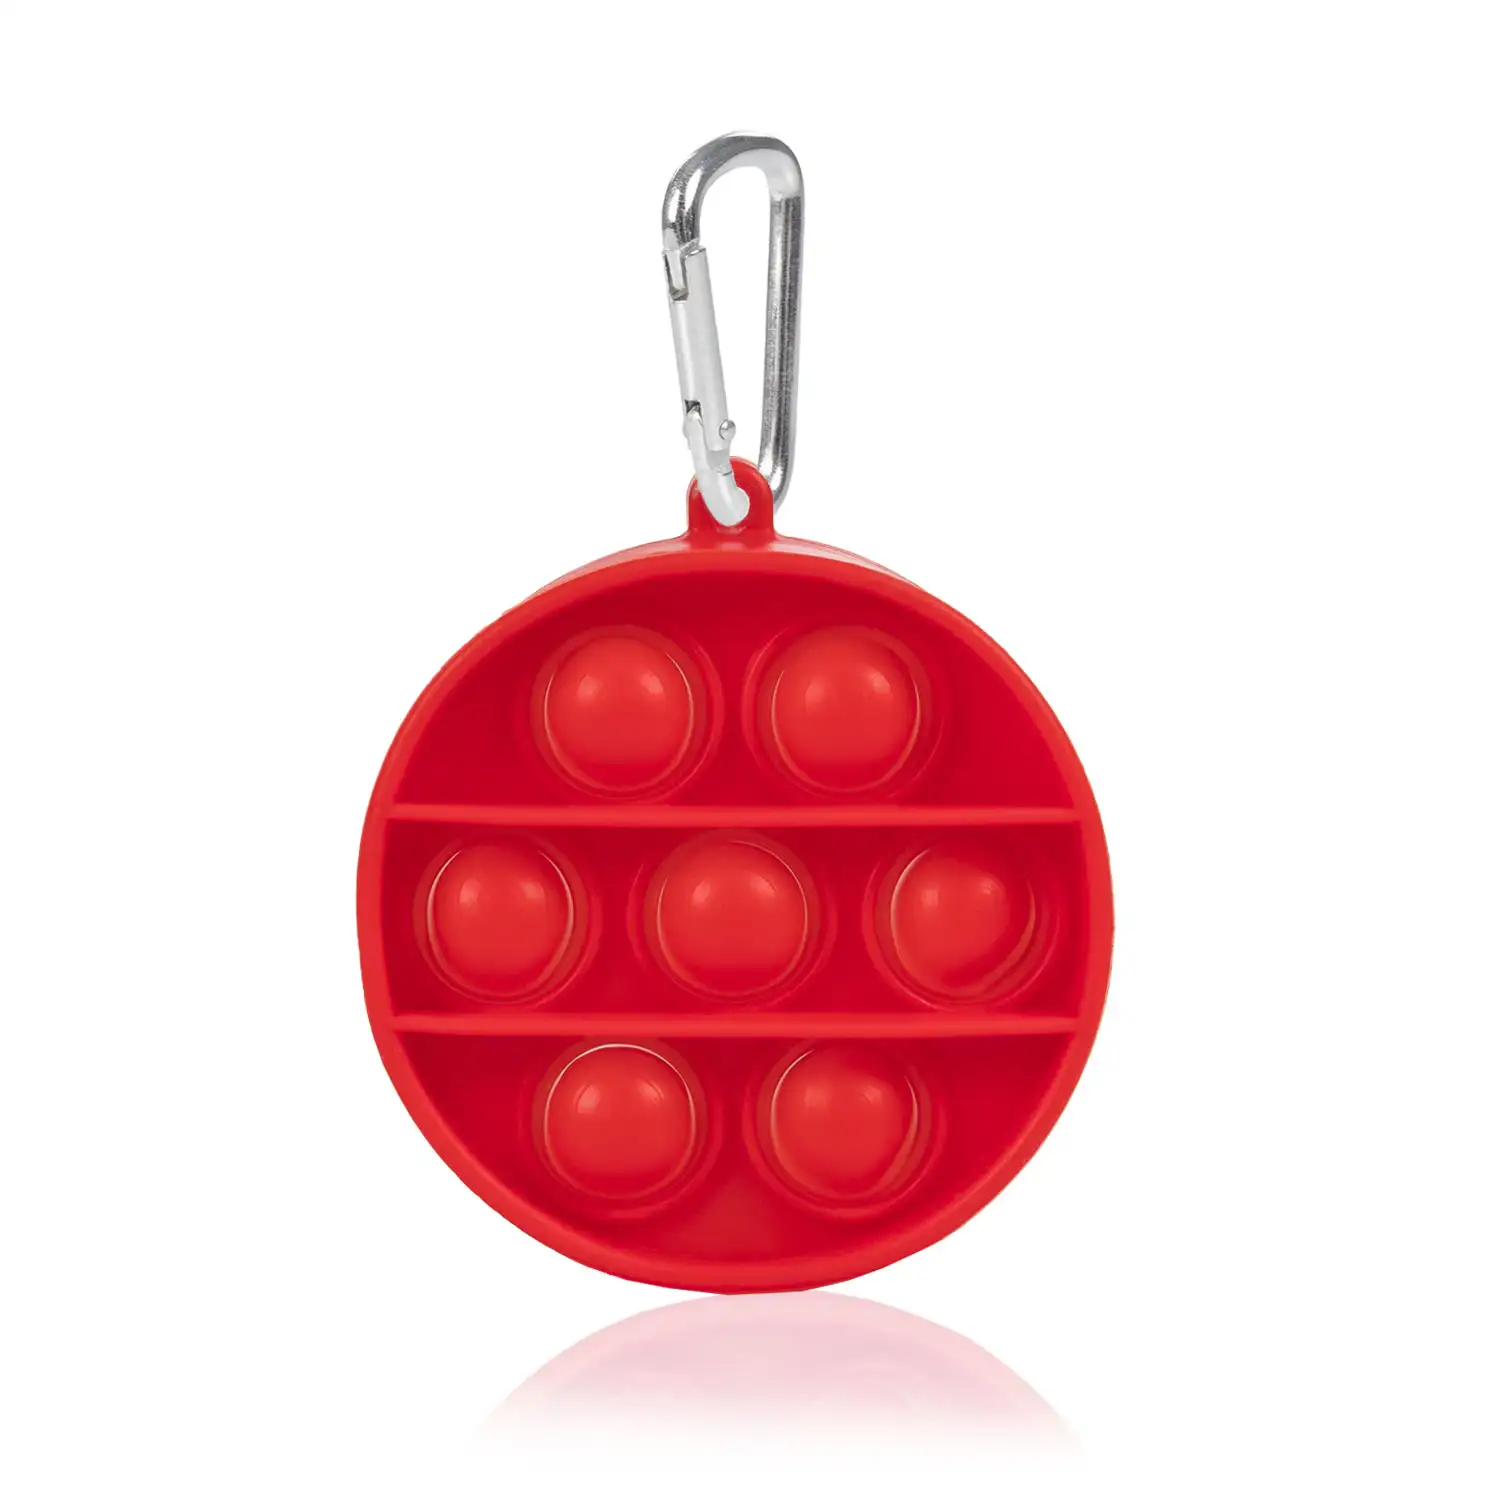 Mini Bubble Pop It juguete sensitivo desestresante, burbujas de silicona para apretar y pulsar. Diseño redondo con llavero.